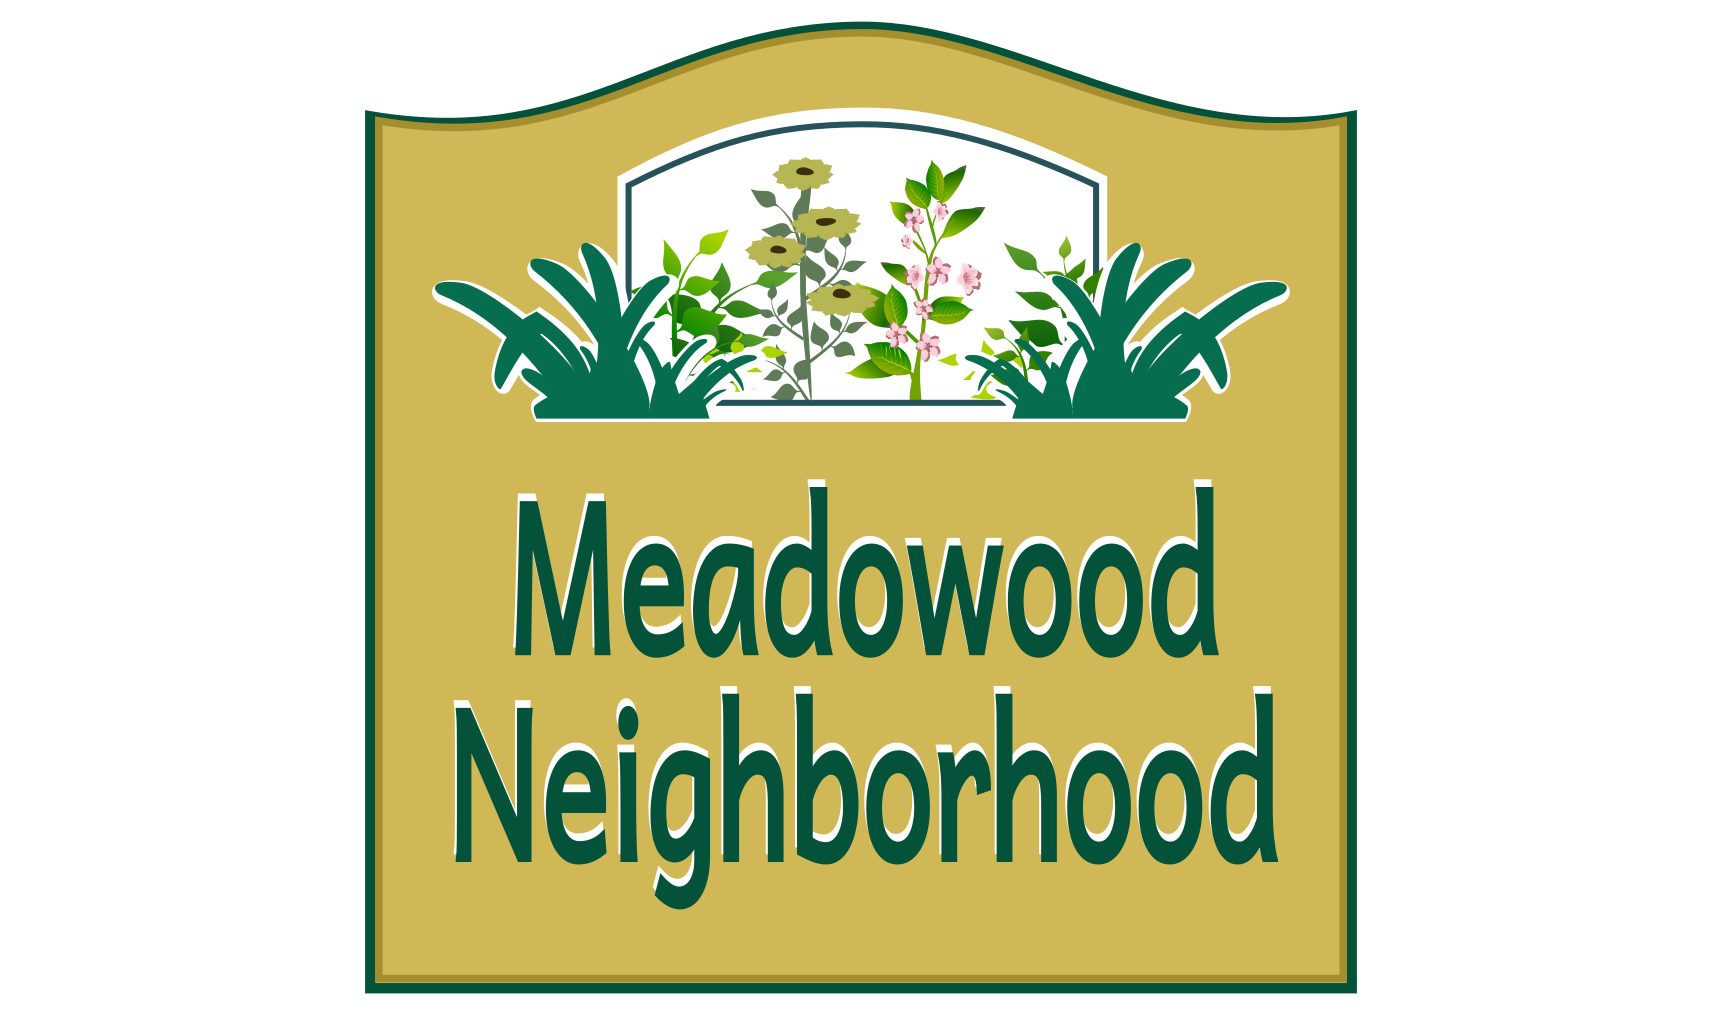 Meadowood — Helping Neighborhood Youth